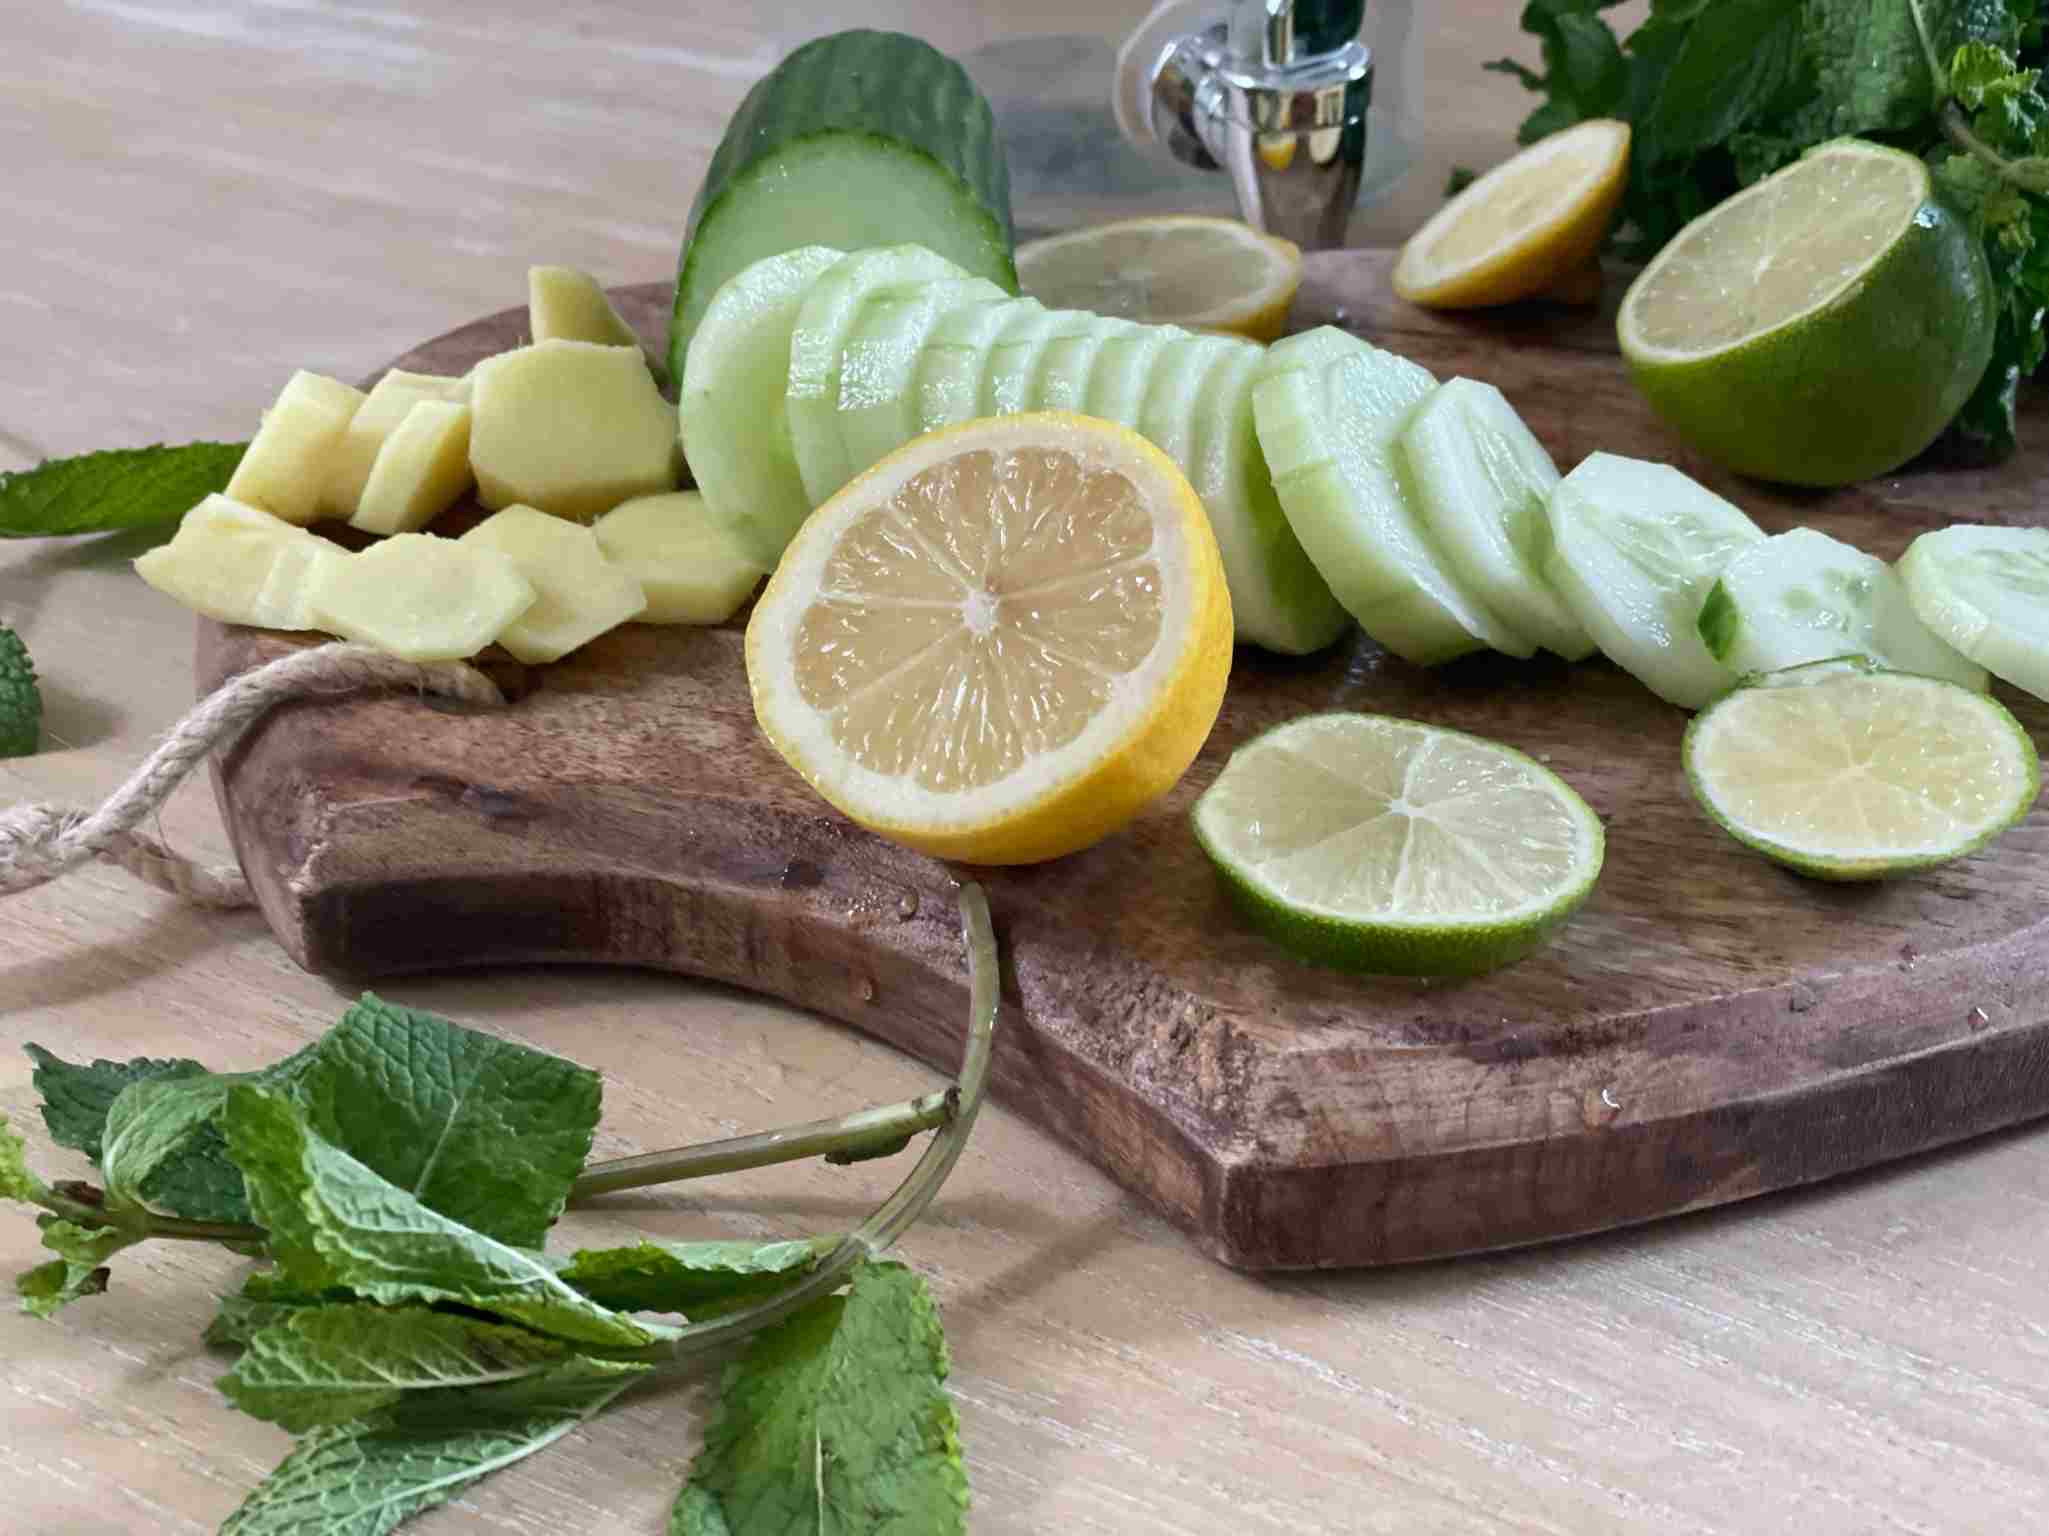 Erfrischende Ingwer-Zitrus-Limonade mit Gurke und Minze - co:dreaming